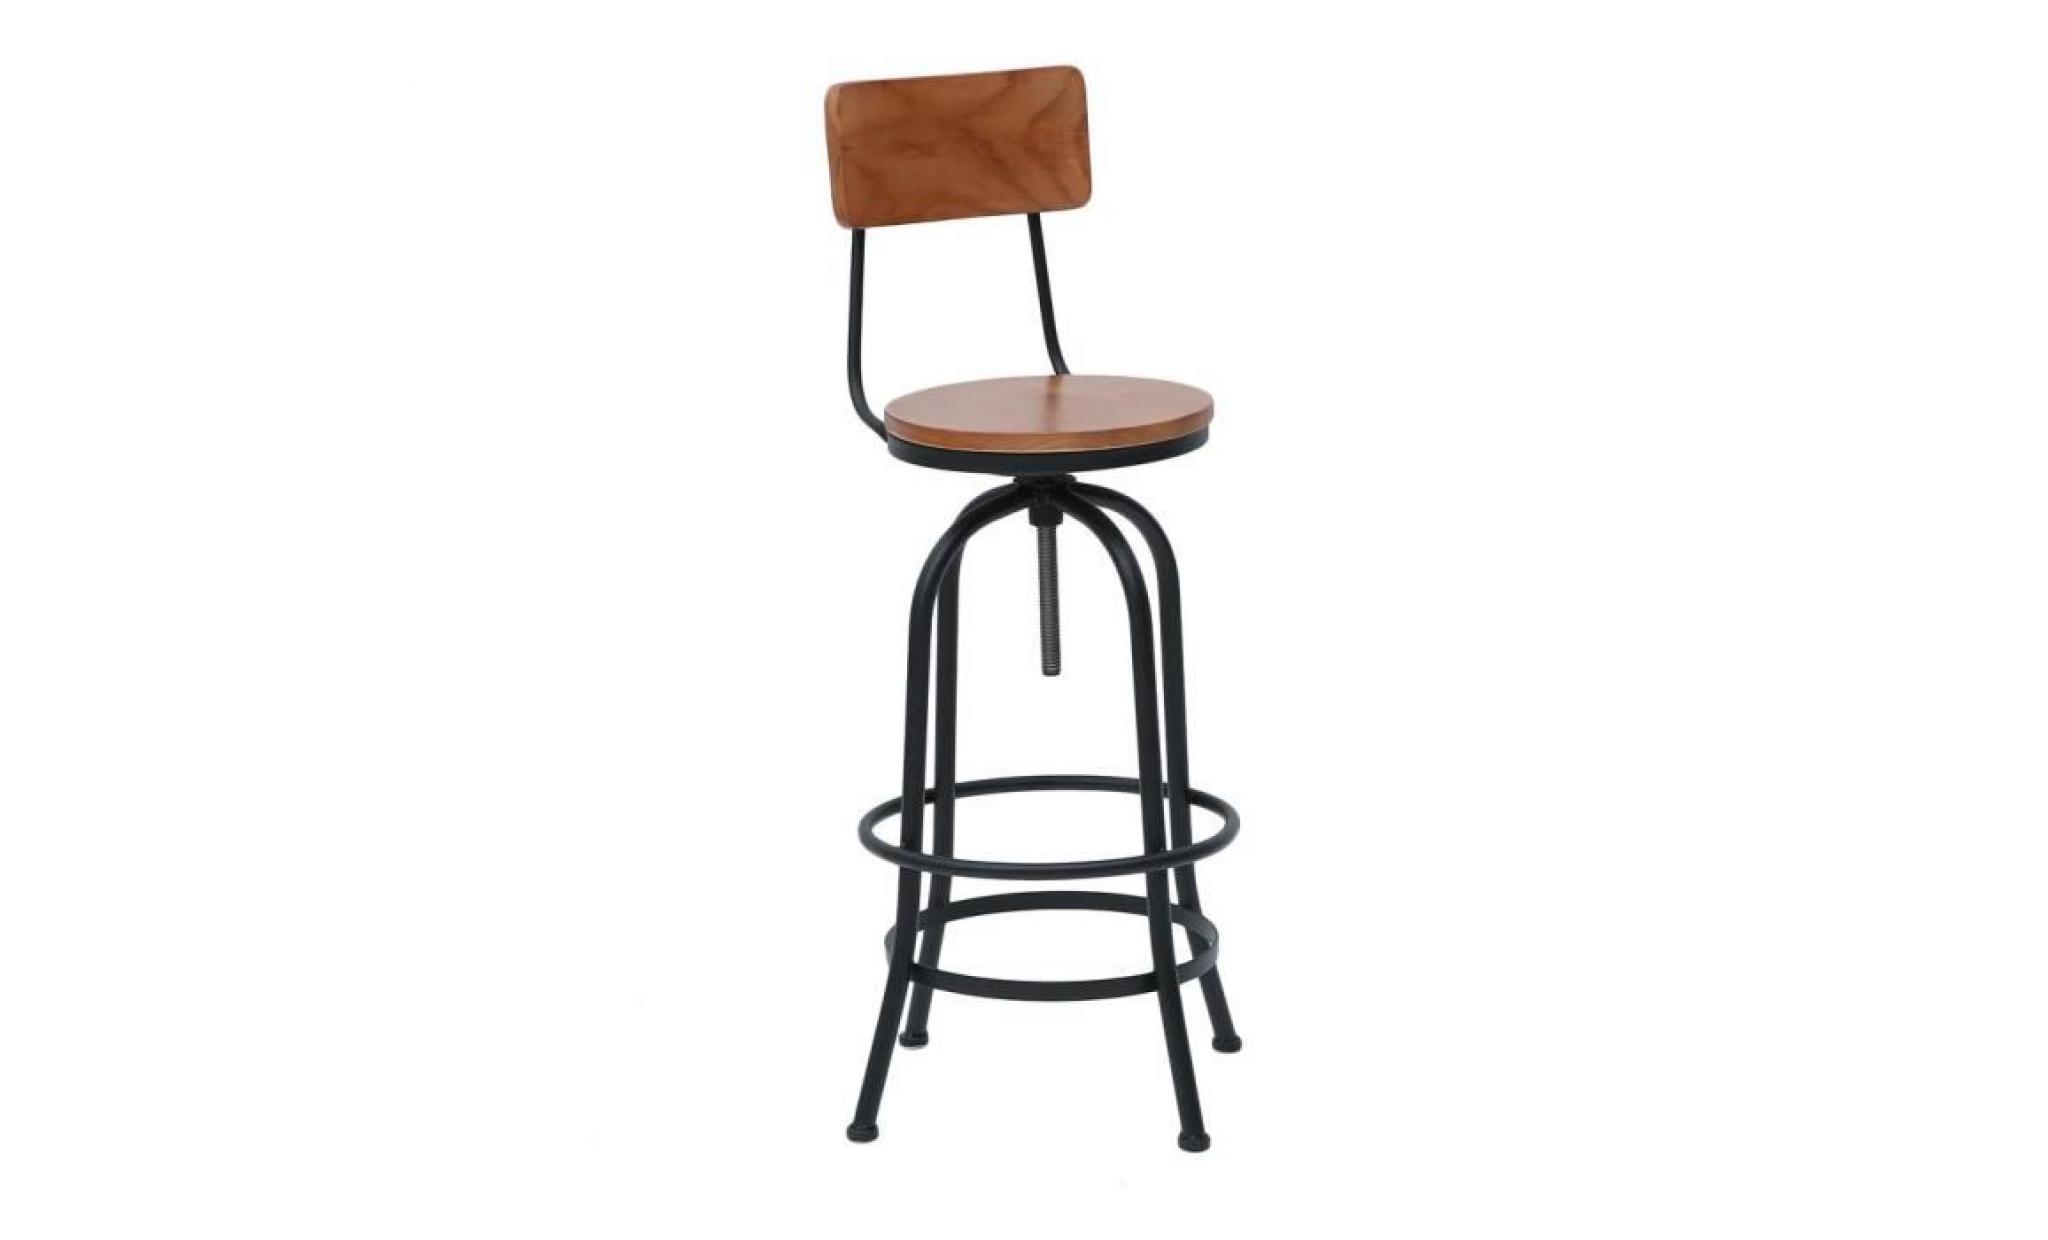 chaise de bar tabouret de bar haut vintage industriel hauteur réglable tabouret rond rotatif